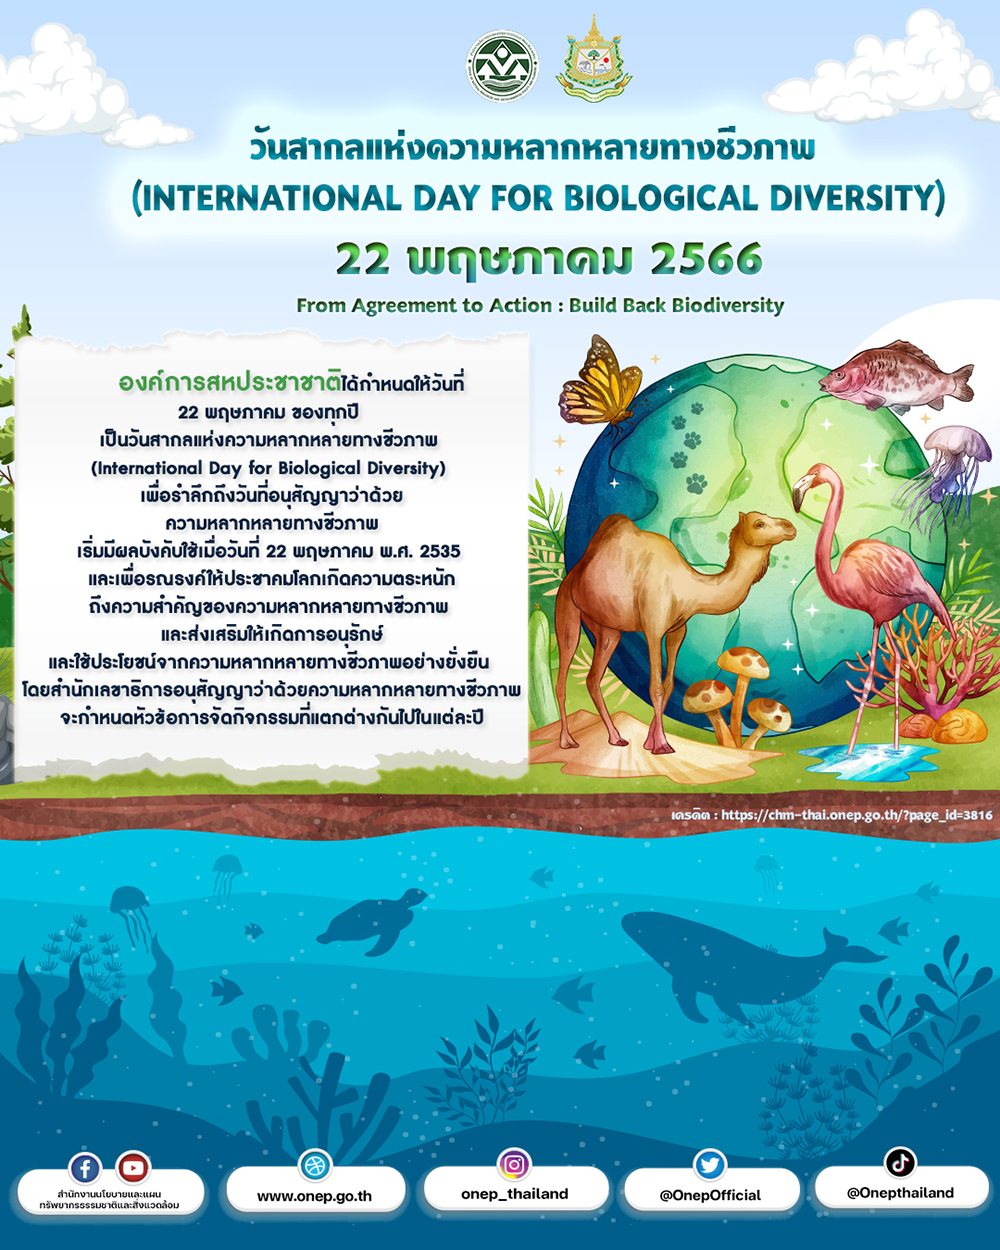 รูปโปรเตอร์วันสากลแห่งความหลากหลายทางชีวภาพ(International Day for Biological Diversity: IDB) วันที่ 22 พฤษภาคม ของทุกปี 